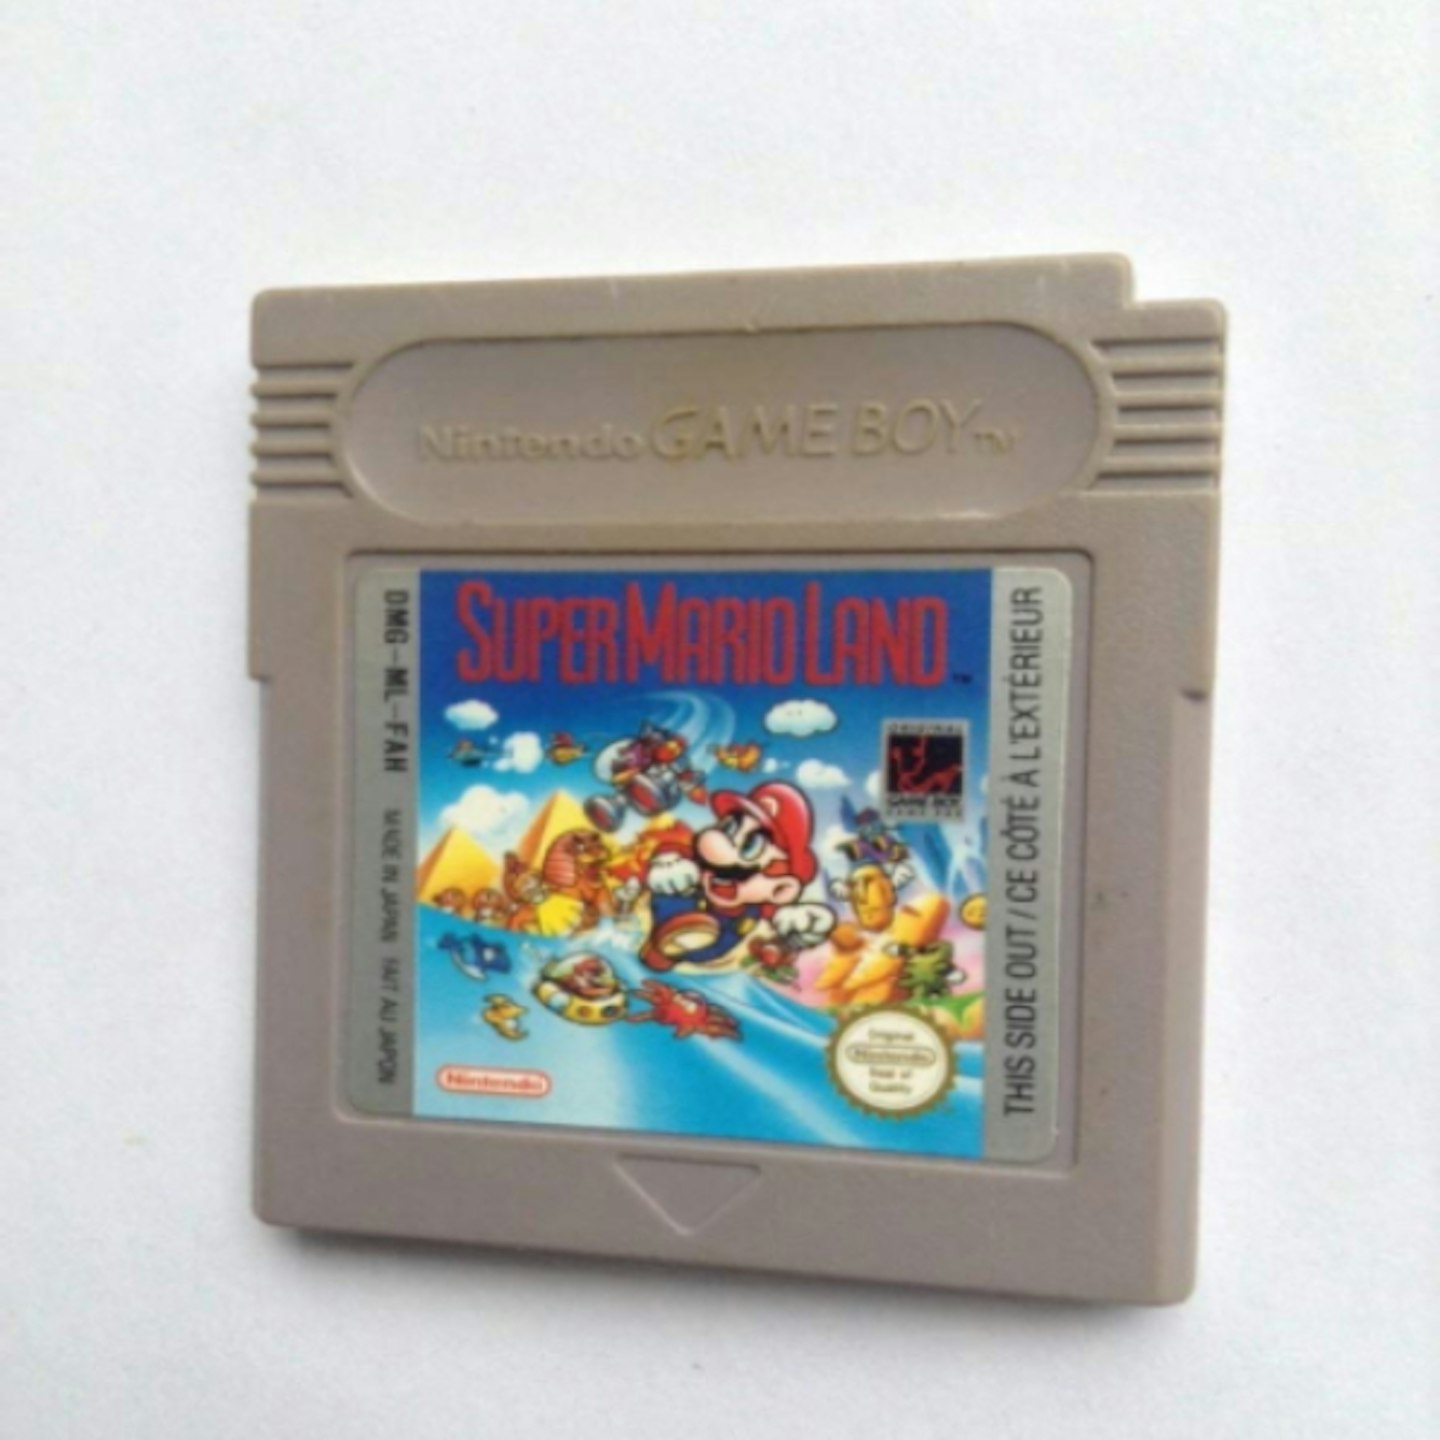 Super Mario Game Boy game